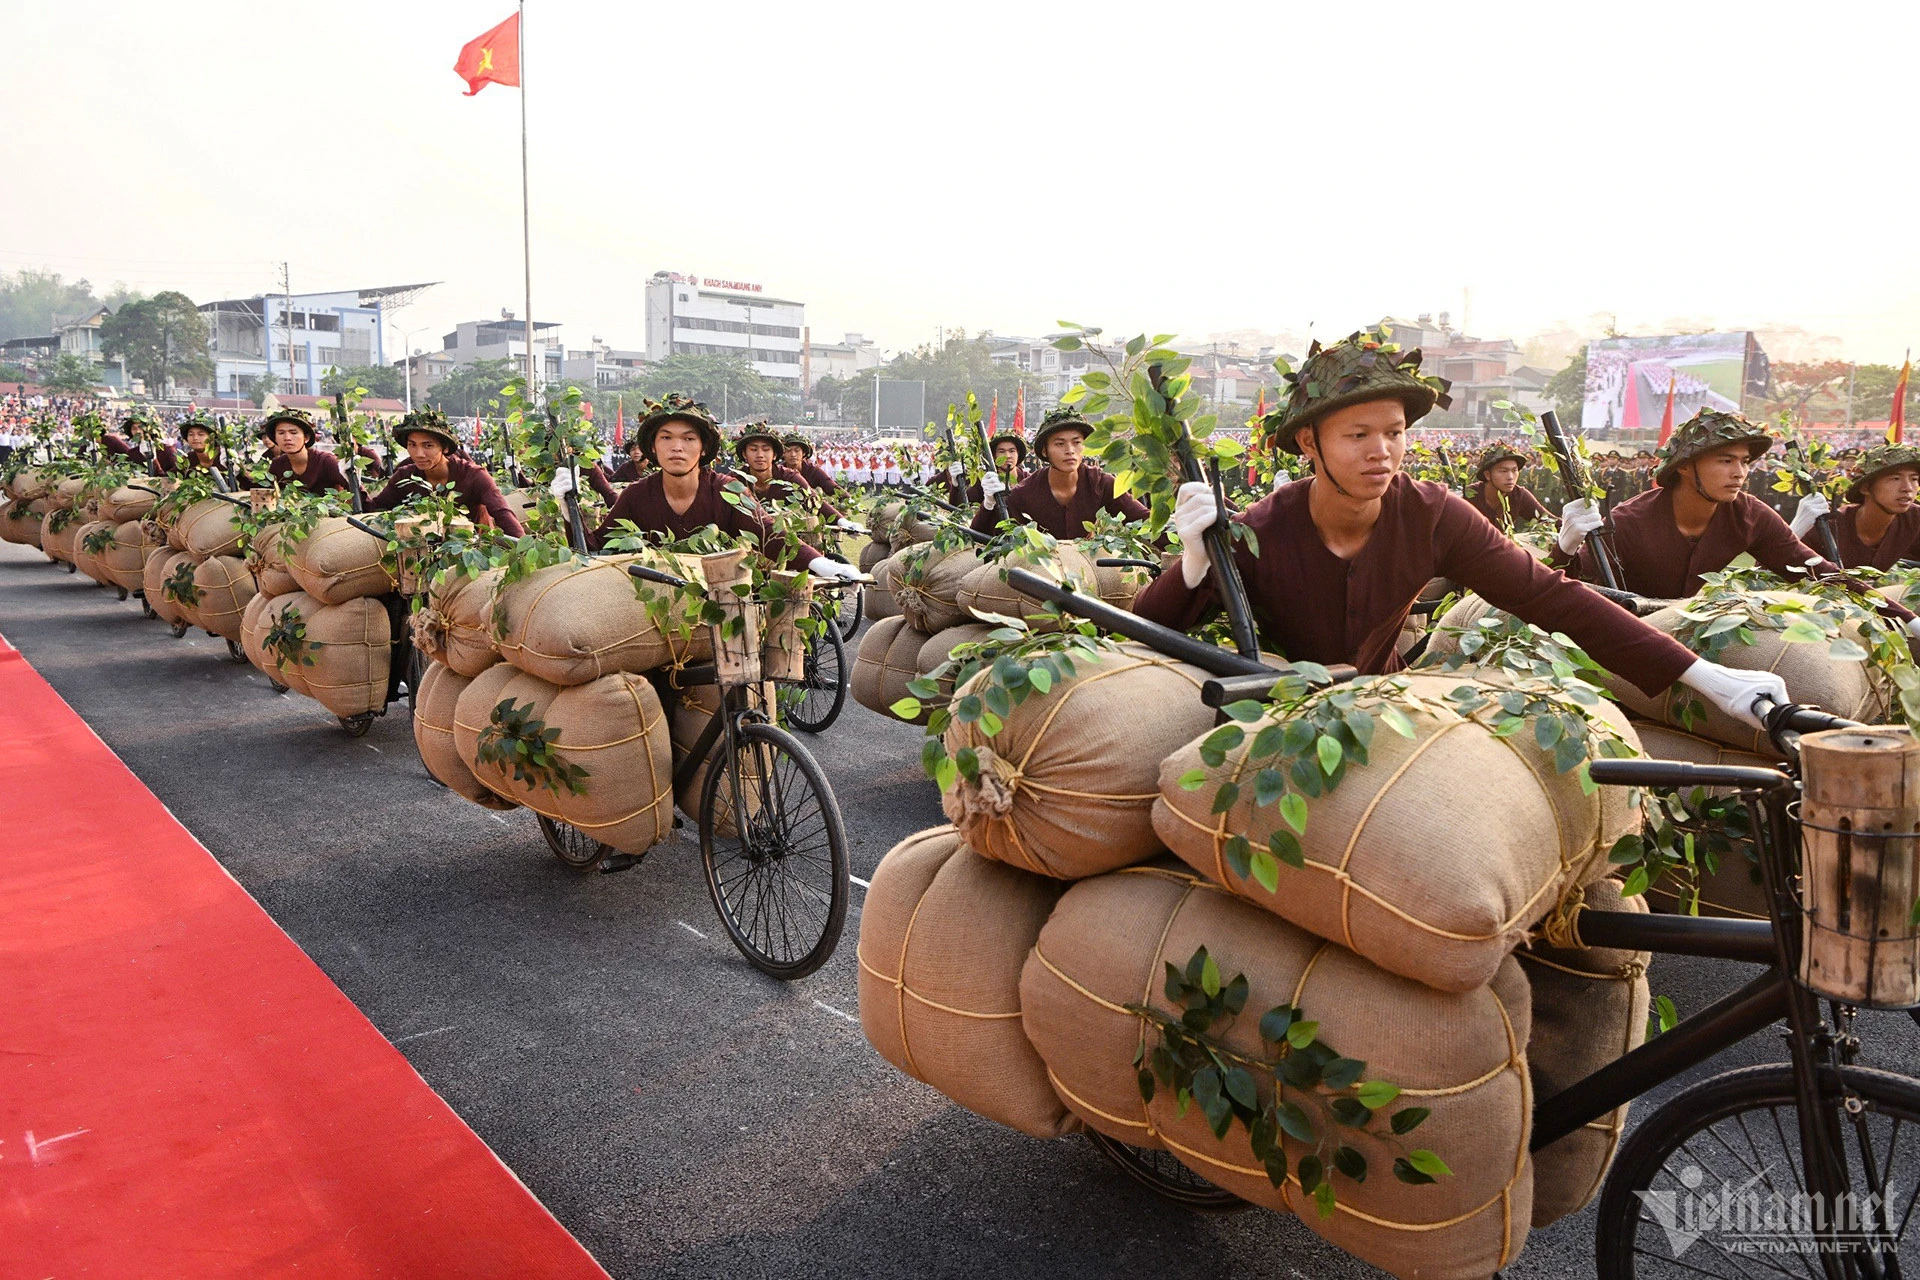 Quân đội và Công an hợp luyện diễu binh trên đường phố Điện Biên